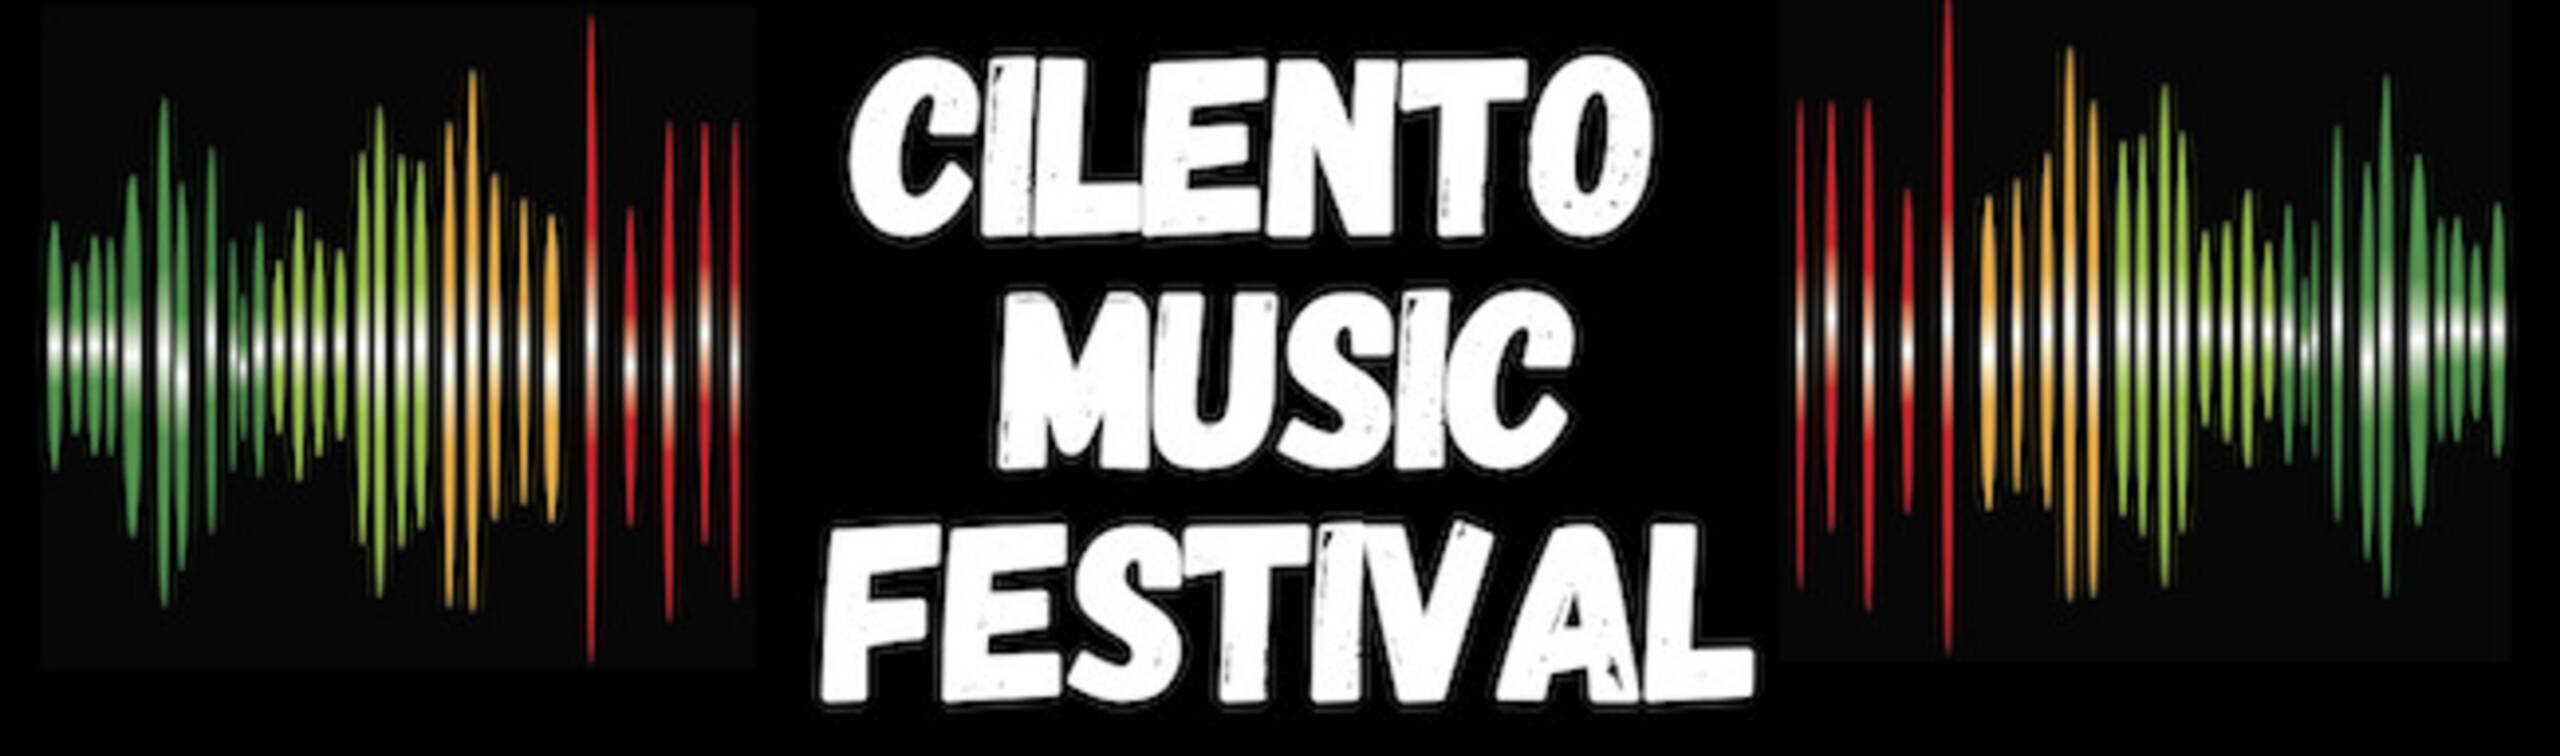 cilento music festival